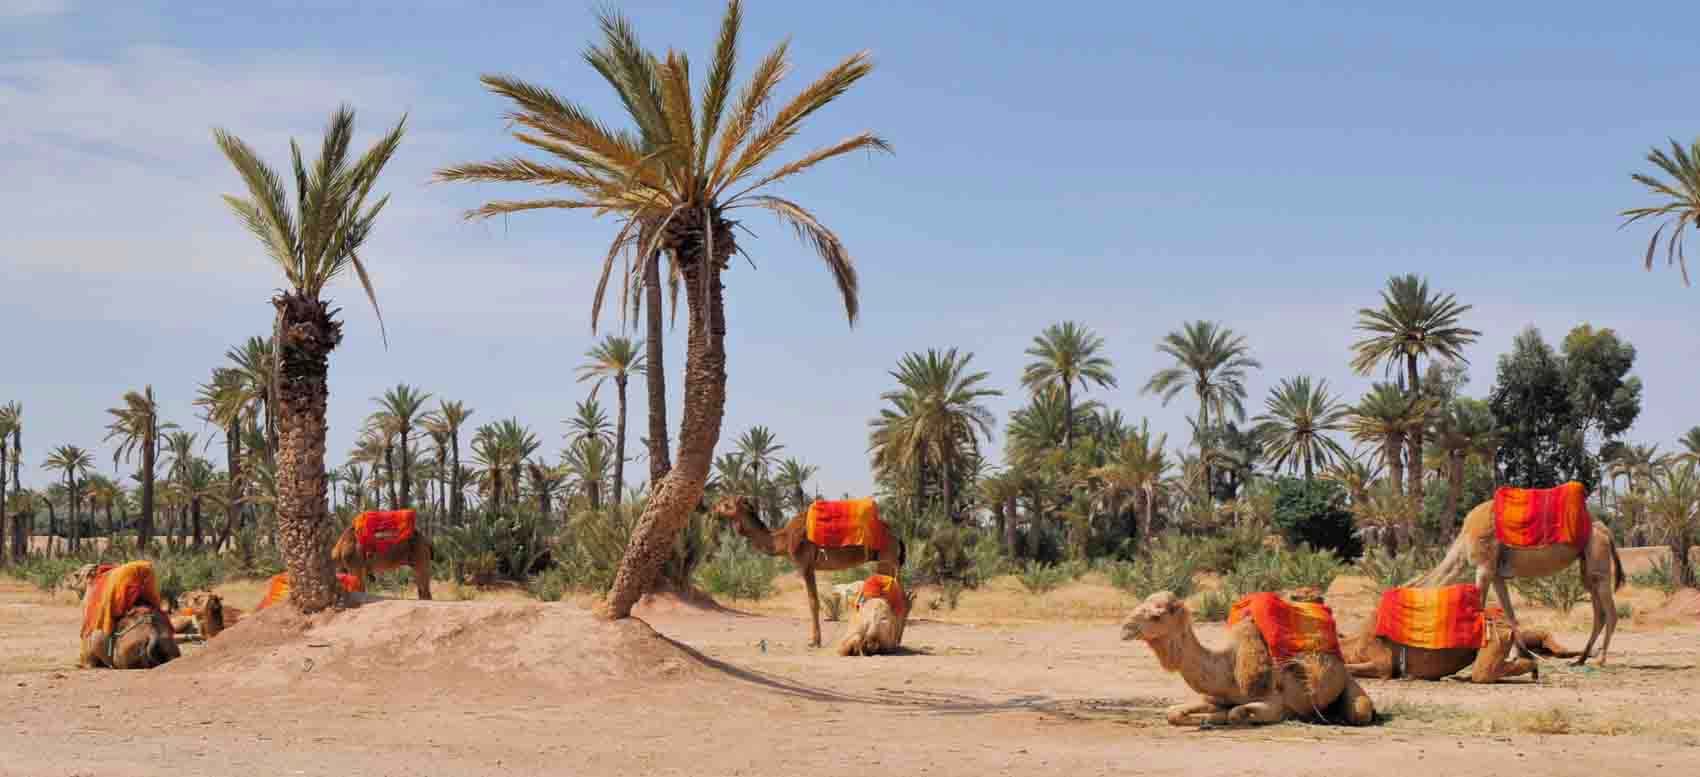 La Palmeraie de Marrakech